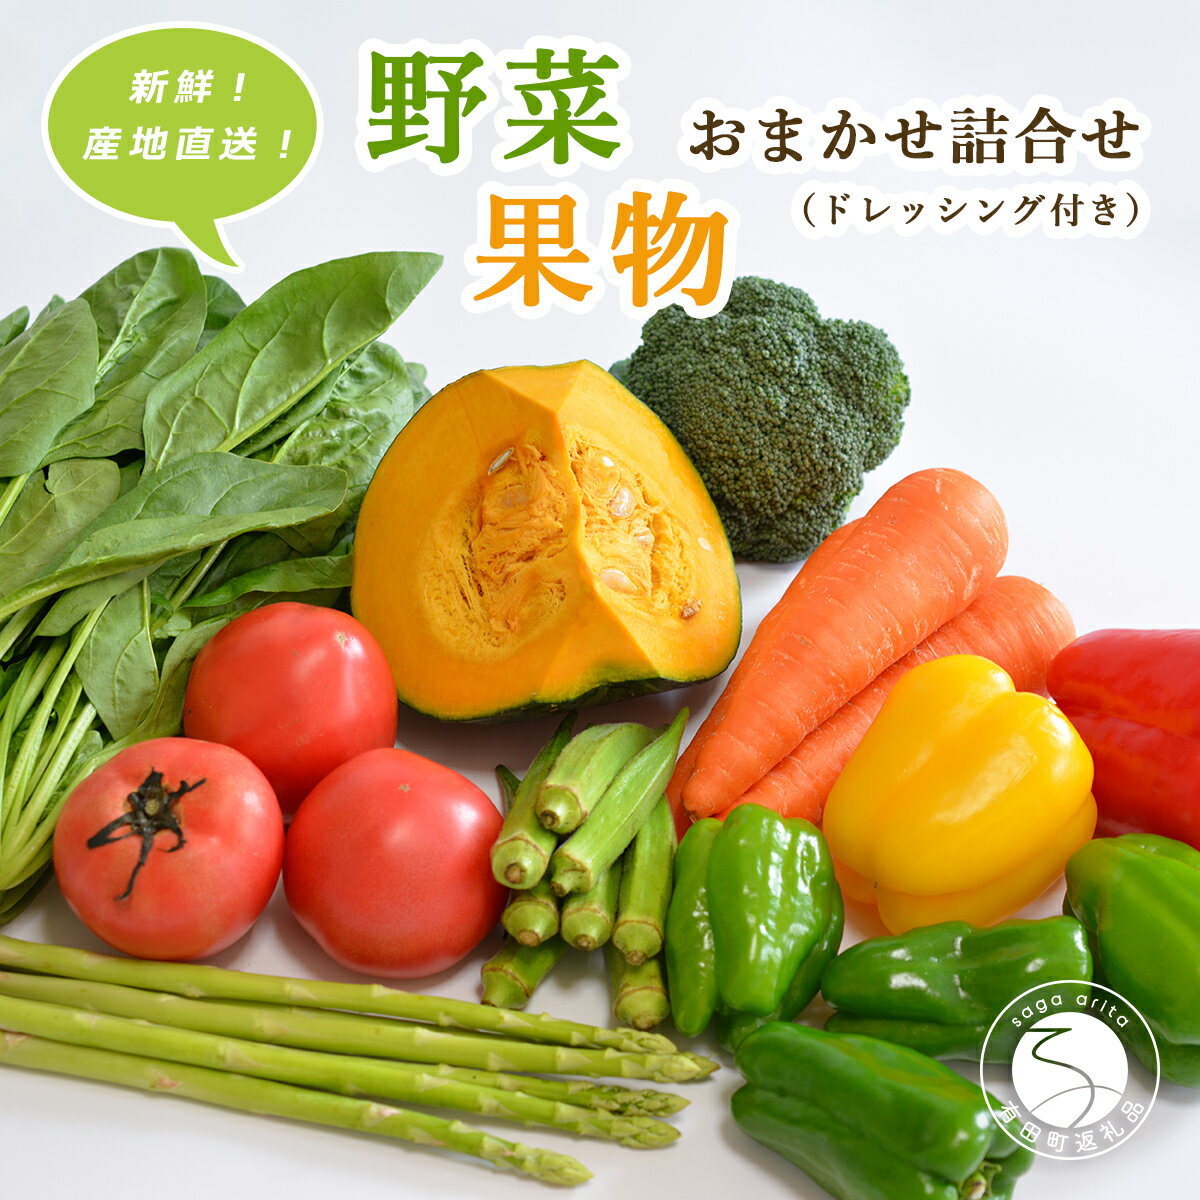 新鮮な地場野菜・果物おまかせ詰合せ(ドレッシング付)JA伊万里 10000円 1万円